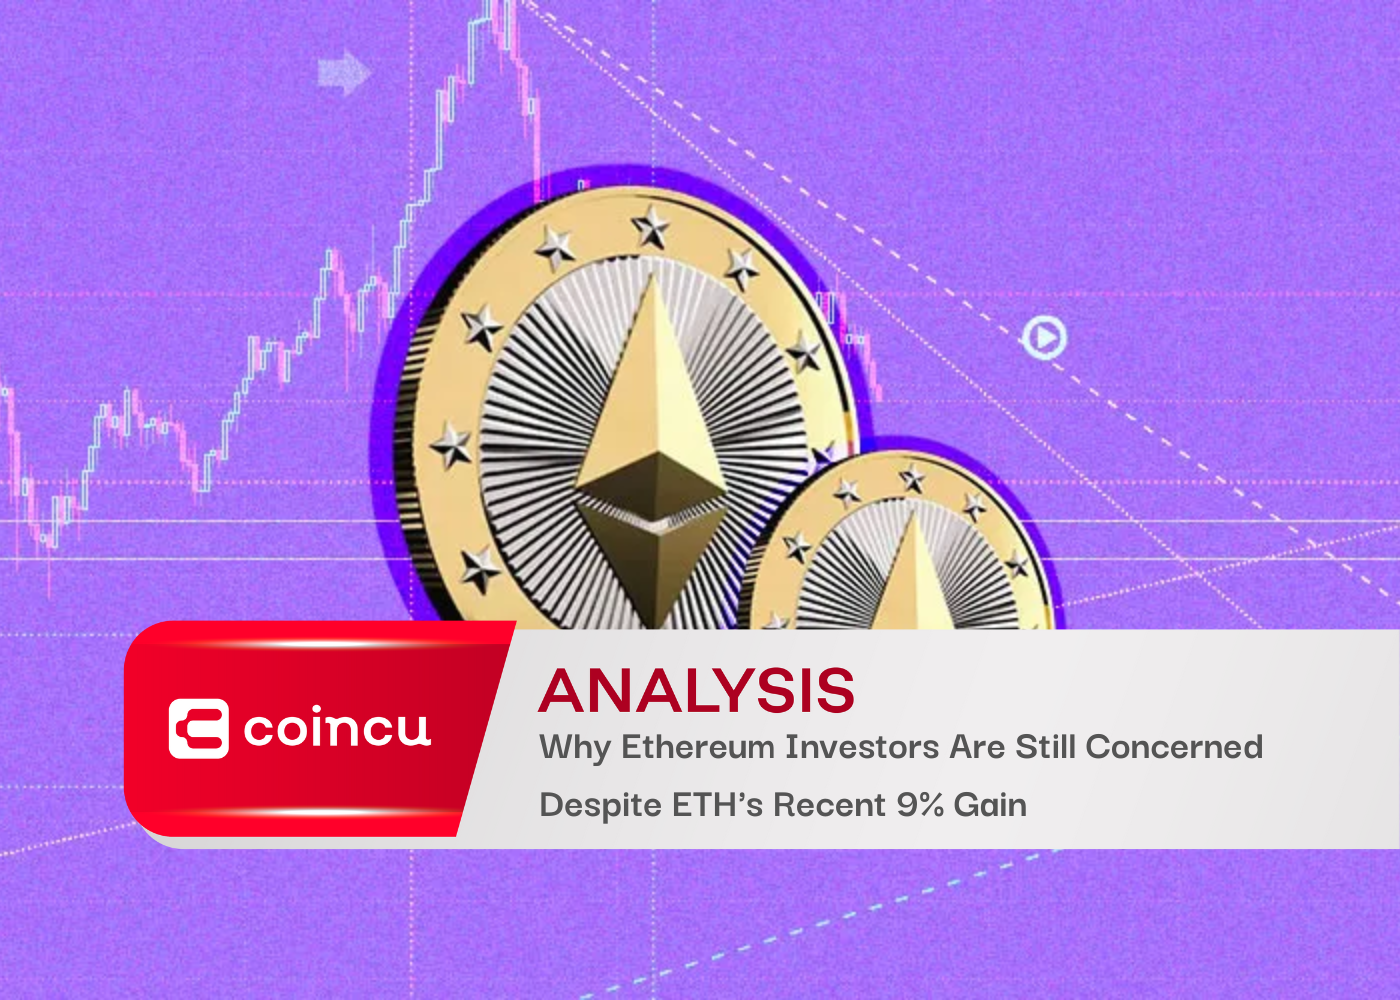 ETH के हालिया 9% लाभ के बावजूद Ethereum निवेशक अभी भी चिंतित क्यों हैं?